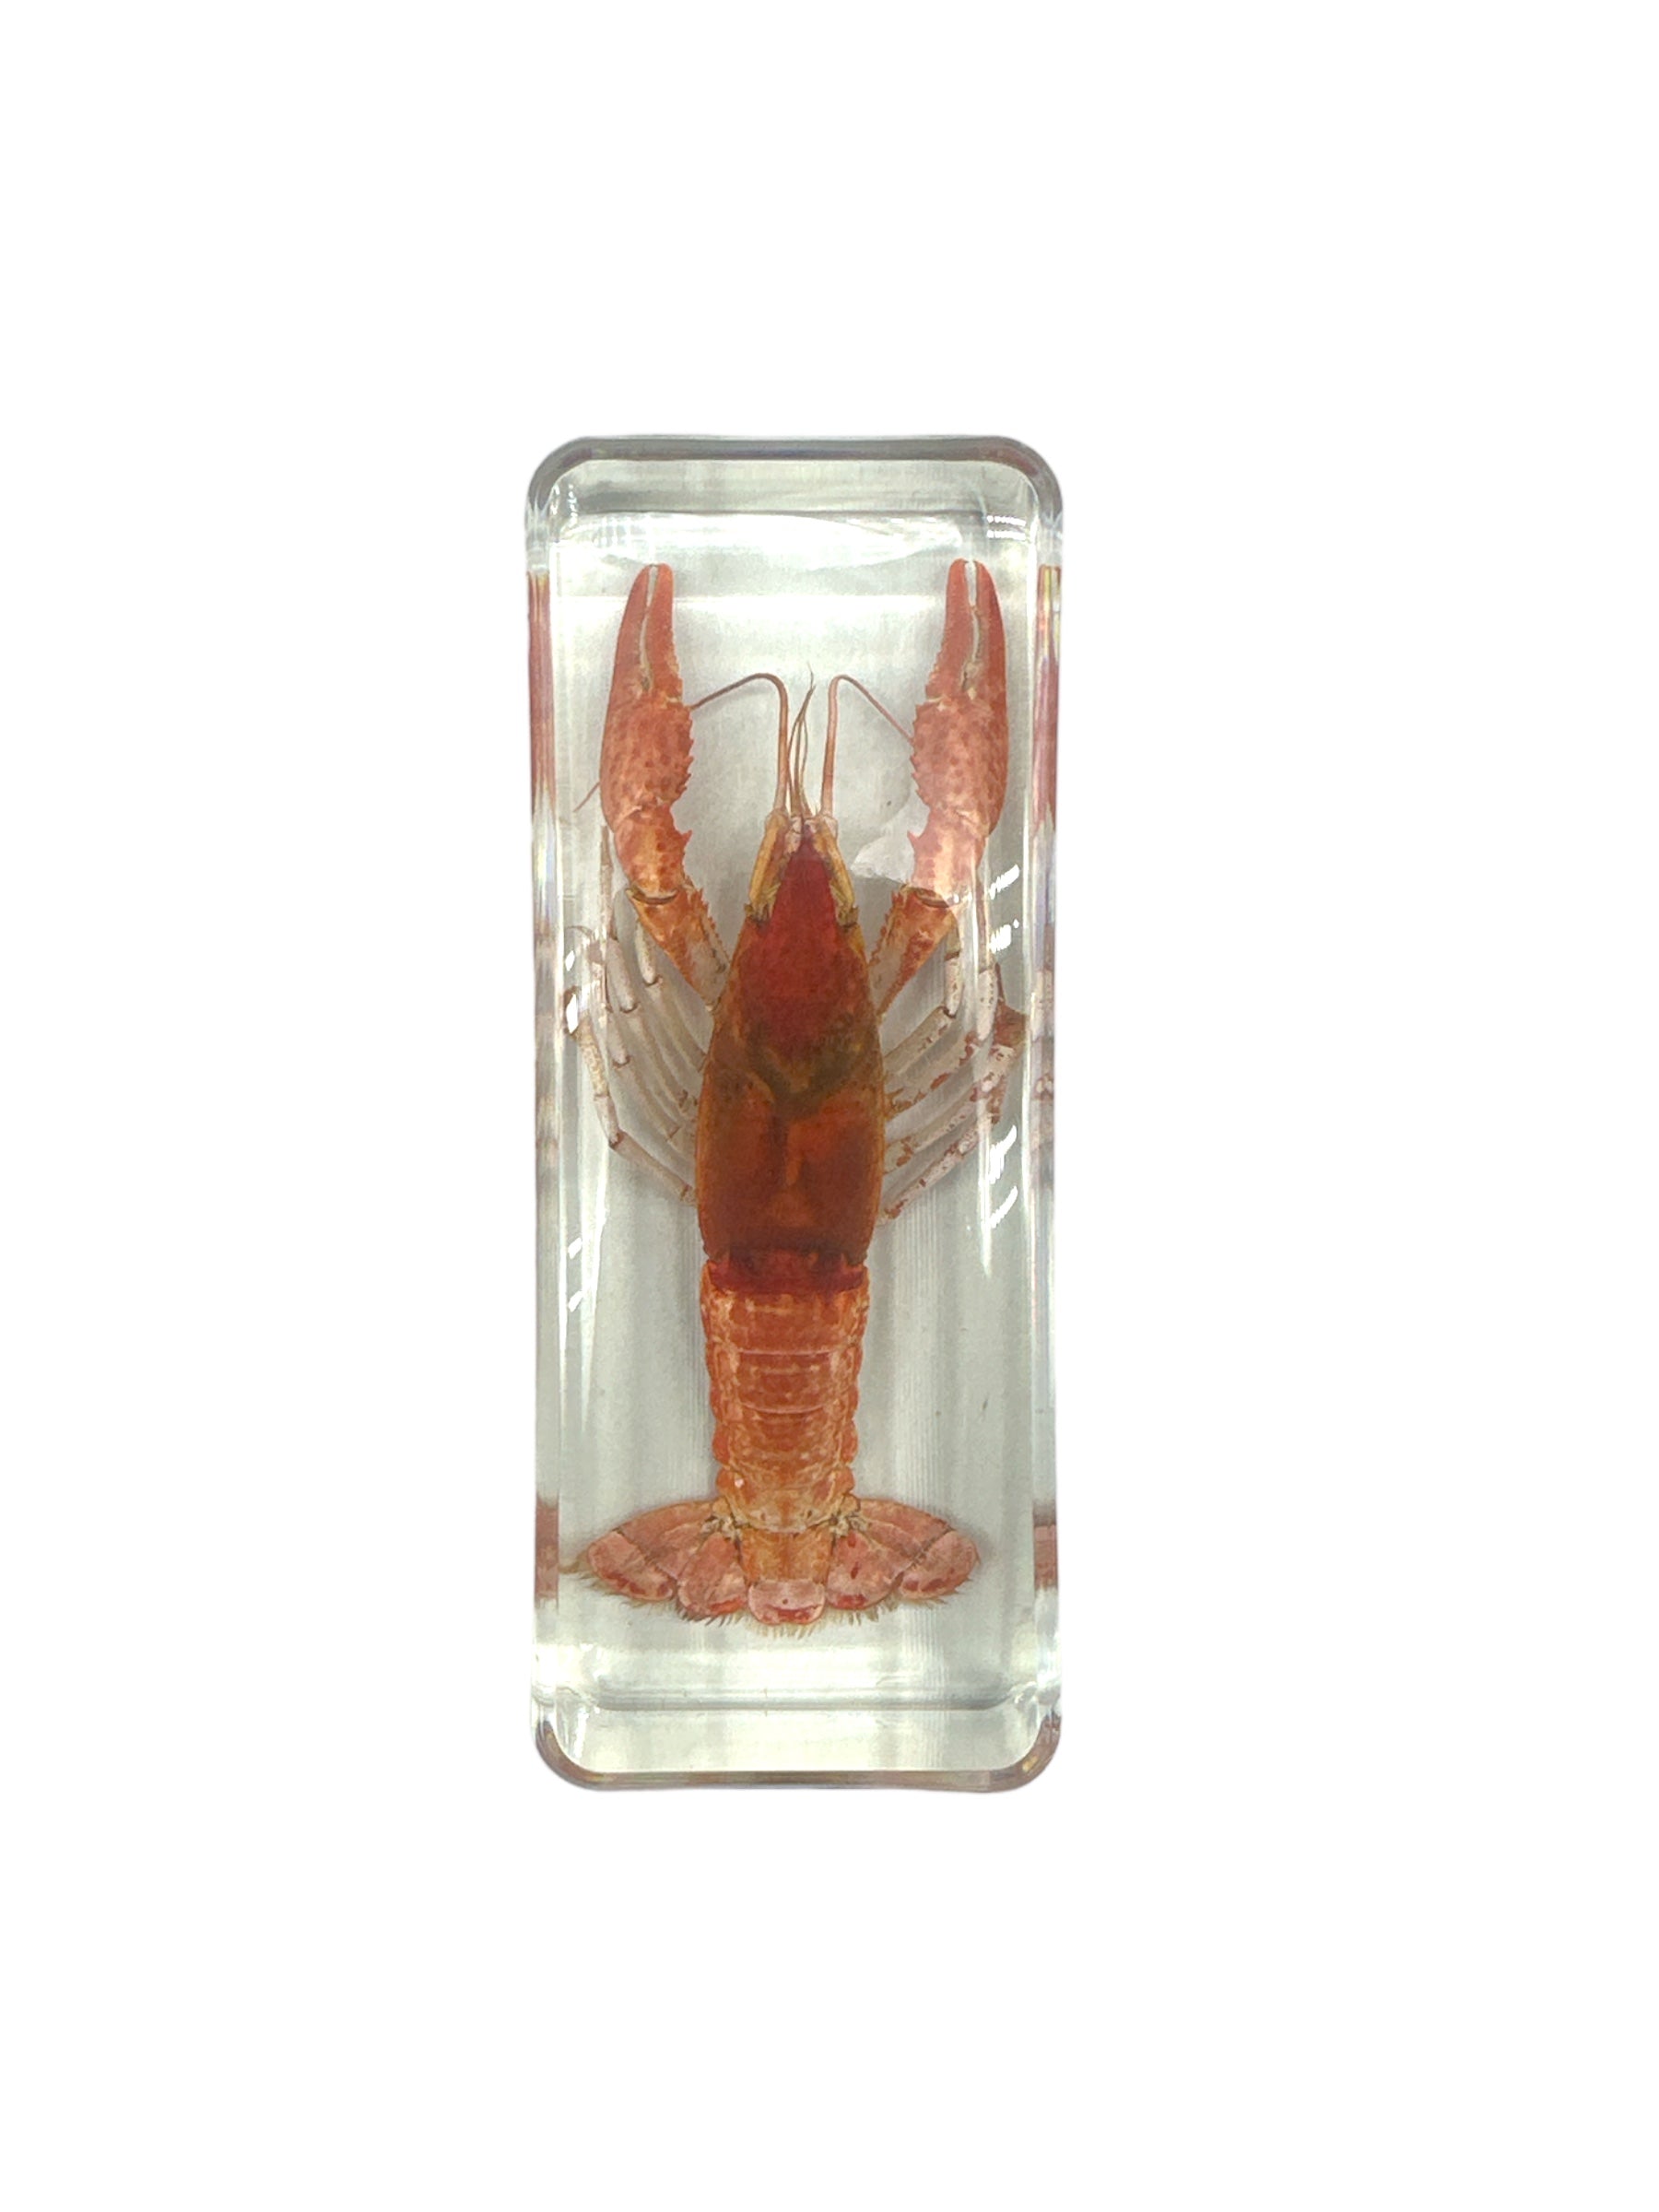 Crayfish - Specimen In Resin